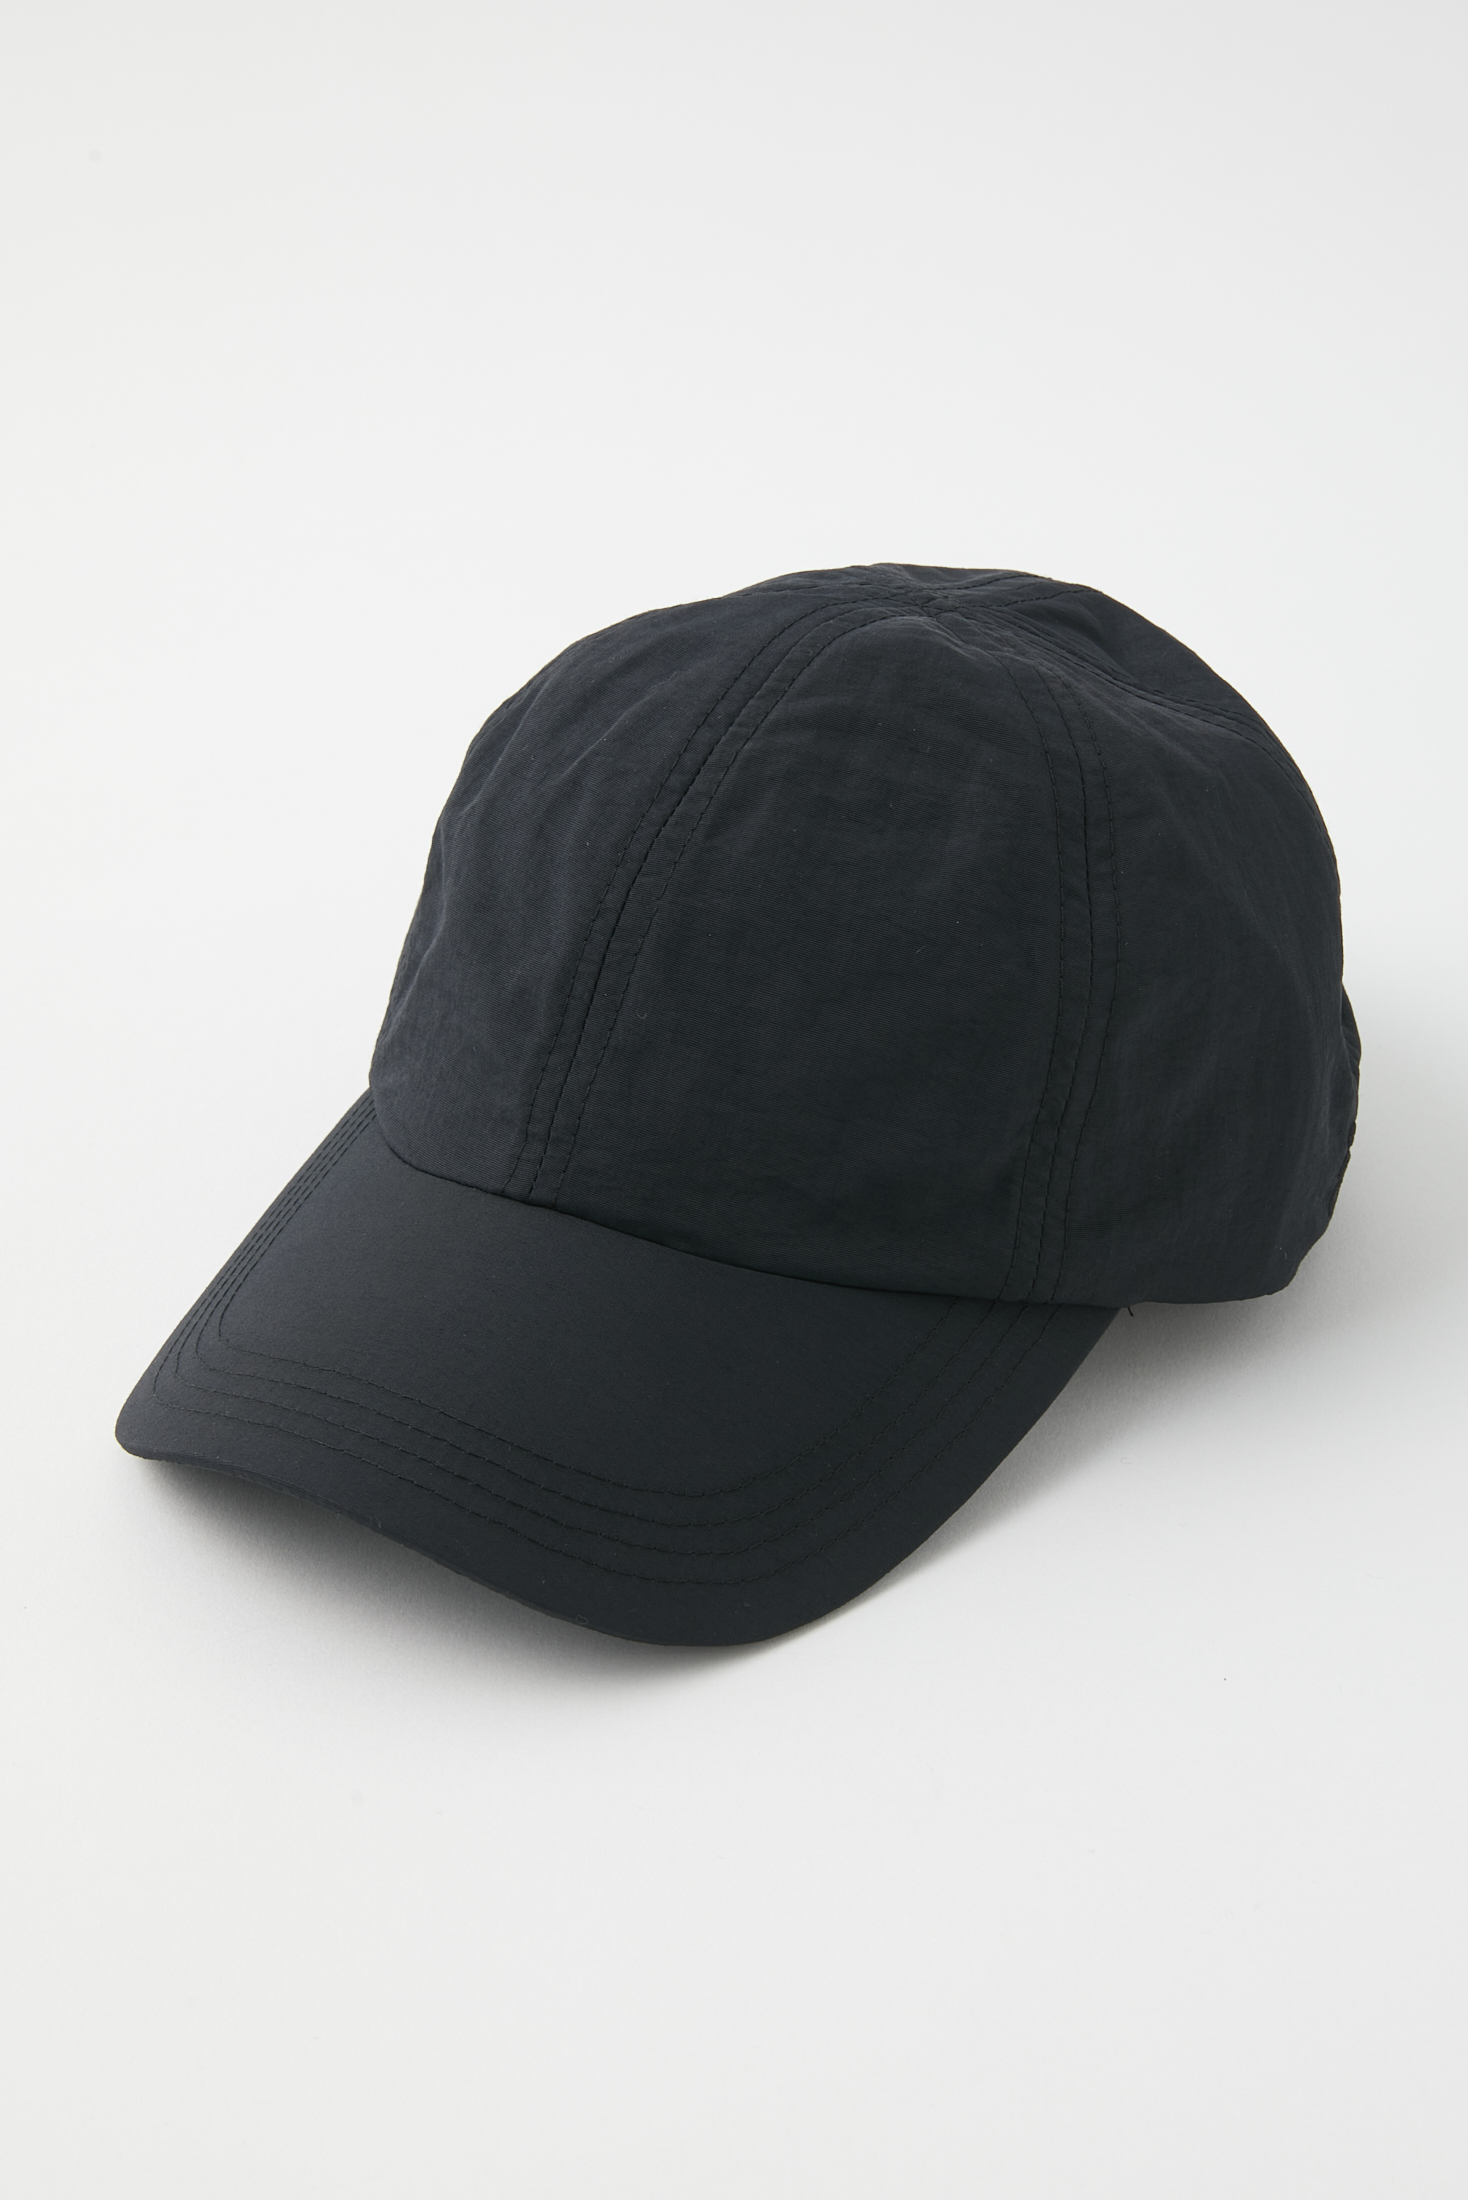 新品 ナゴンスタンス キャップ - 帽子